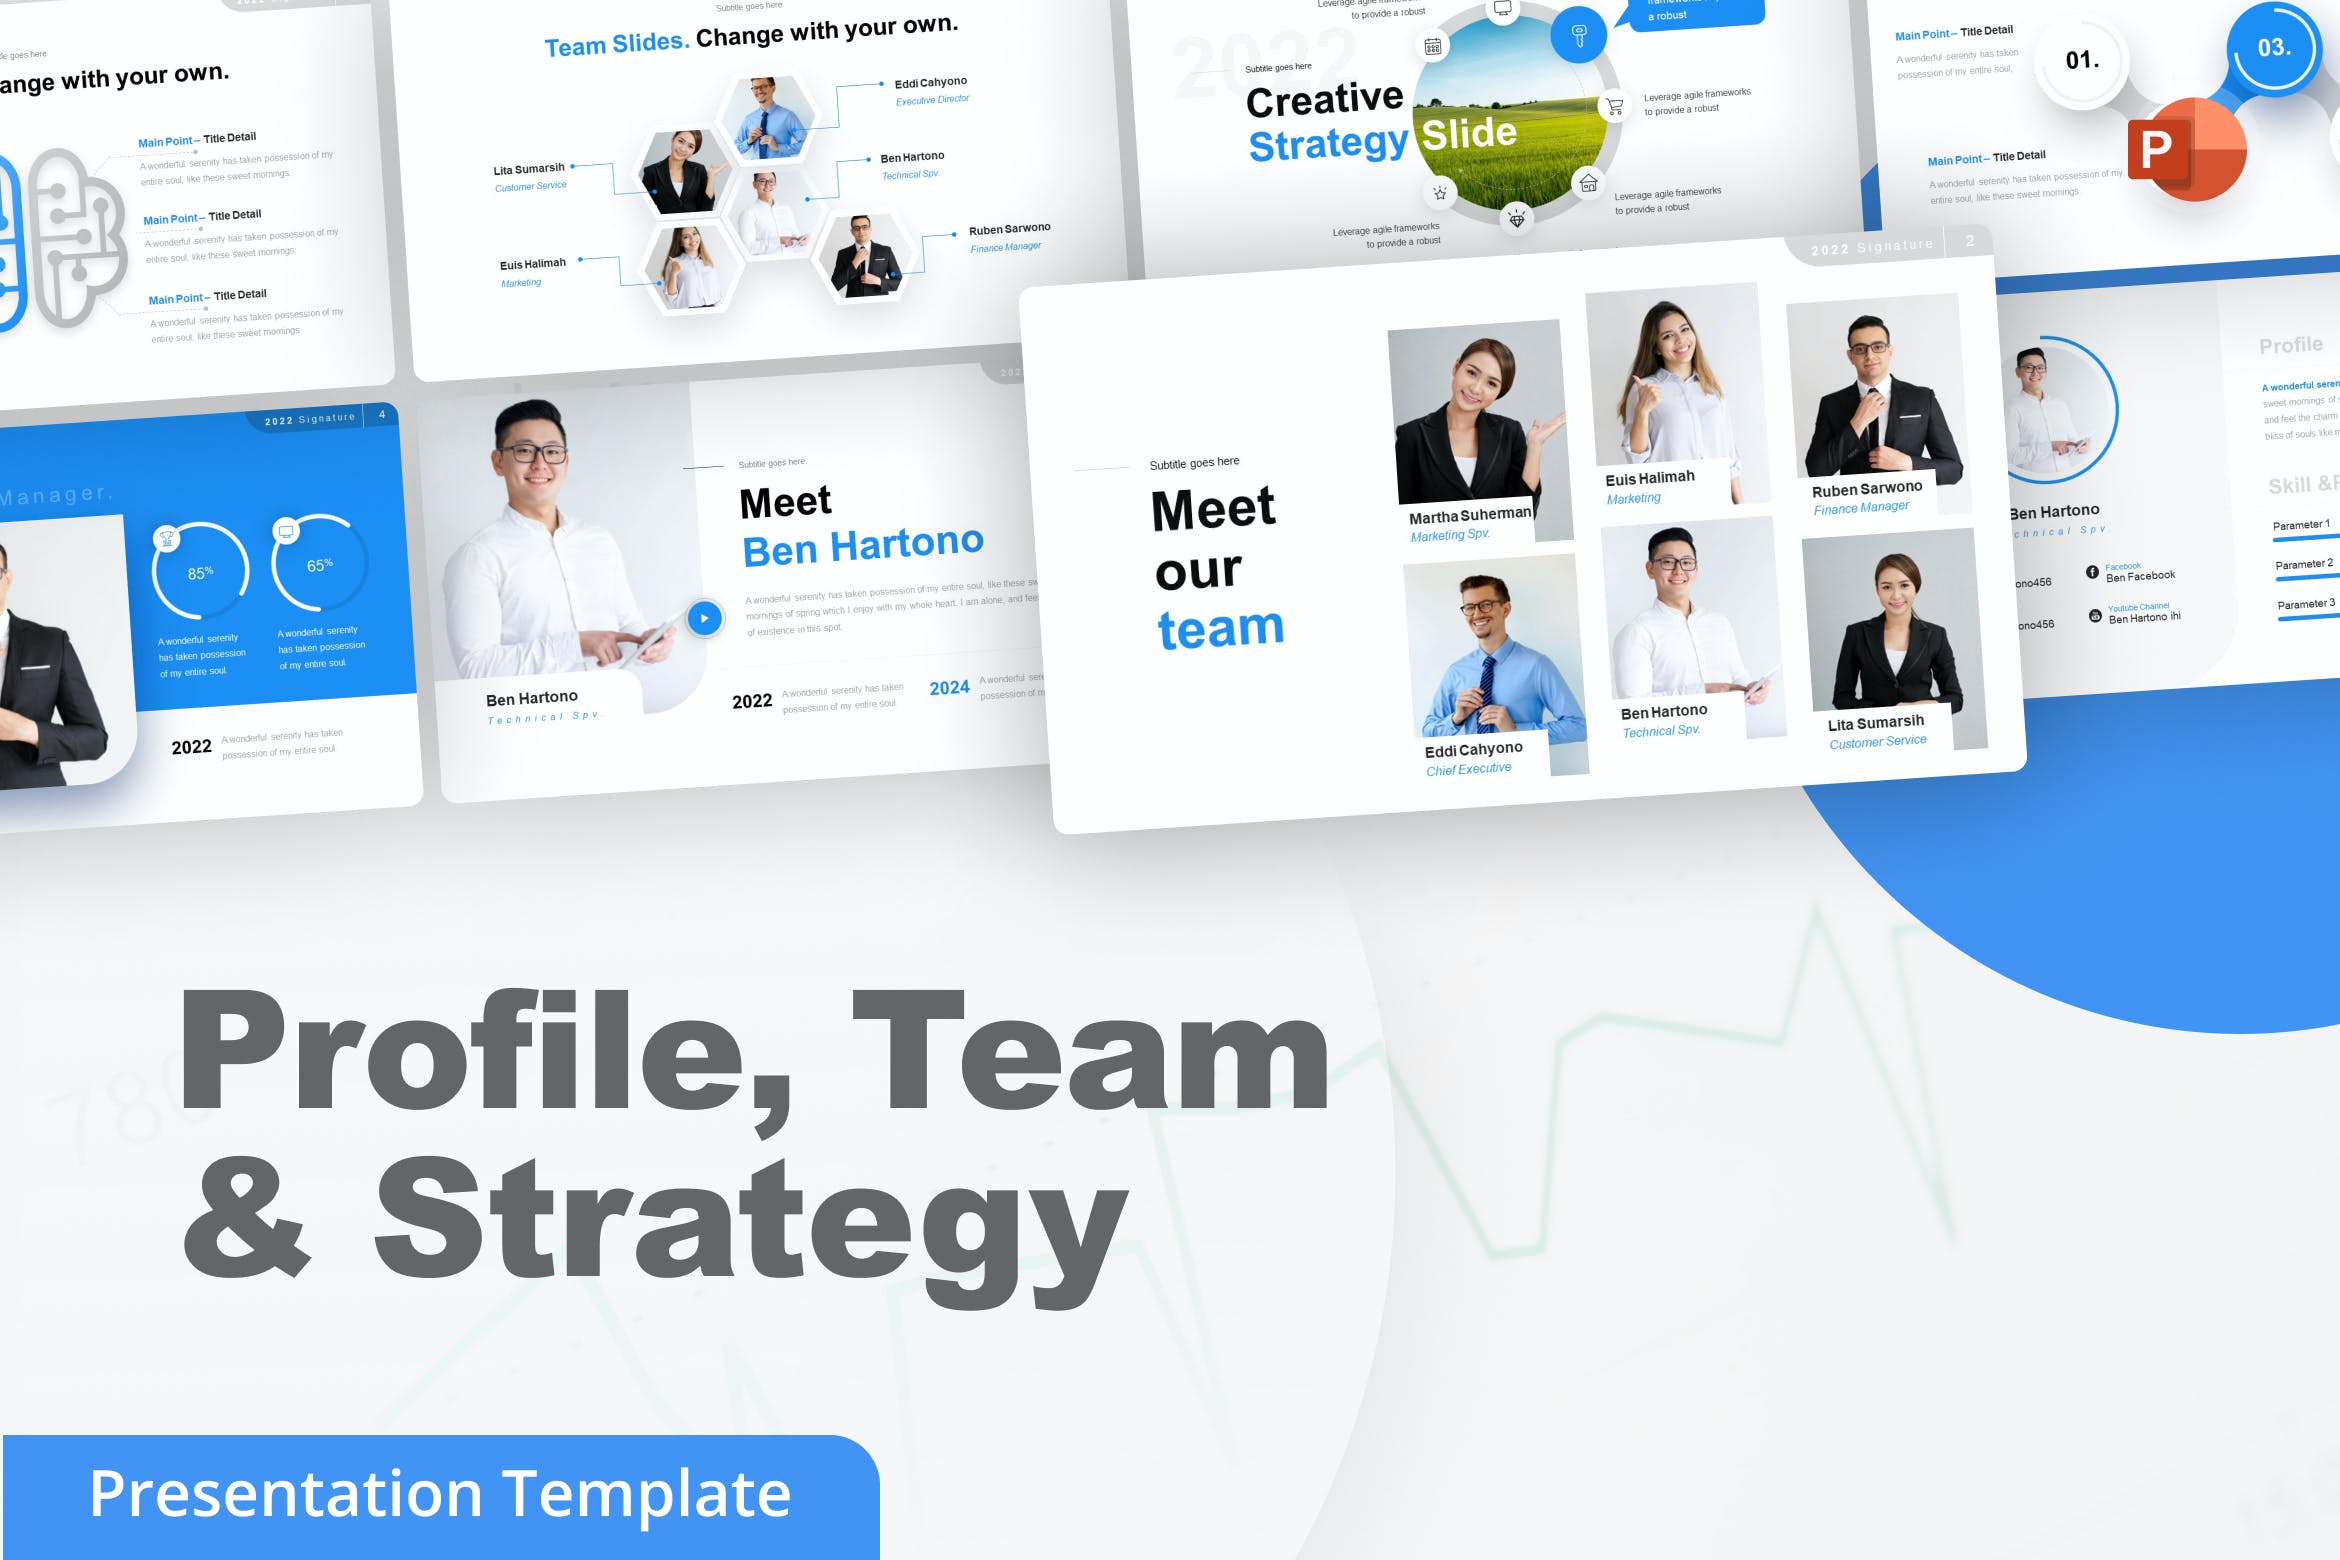 简介/团队和战略PPT创意模板 Profile, Team & Strategy PowerPoint Template 幻灯图表 第1张